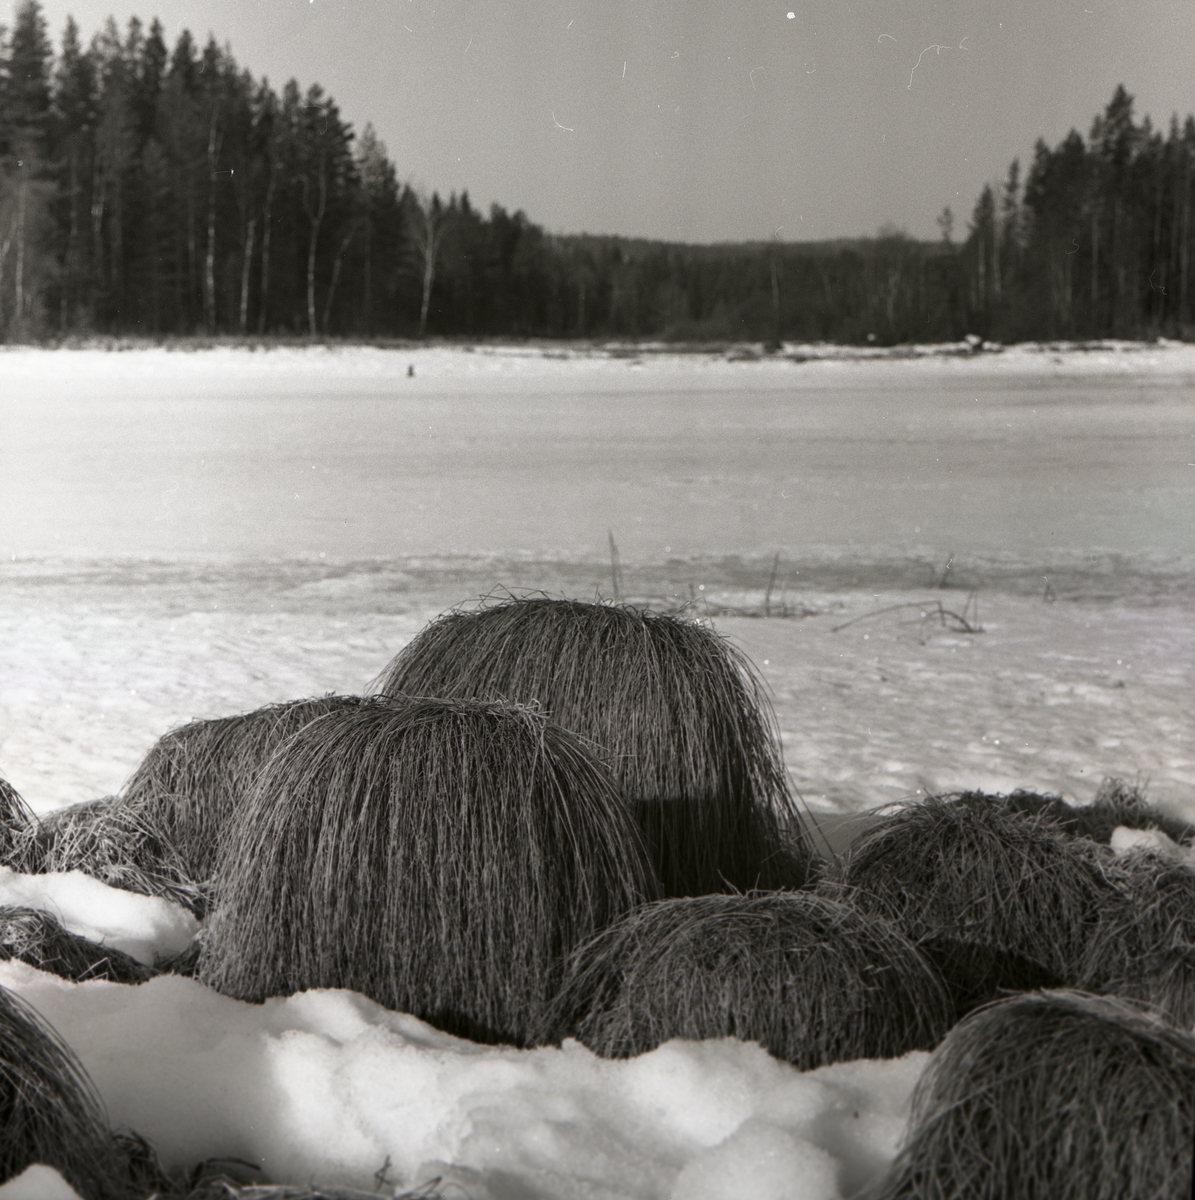 Uppstickande grästuvor på snötäckt mark med skog i bakgrunden.